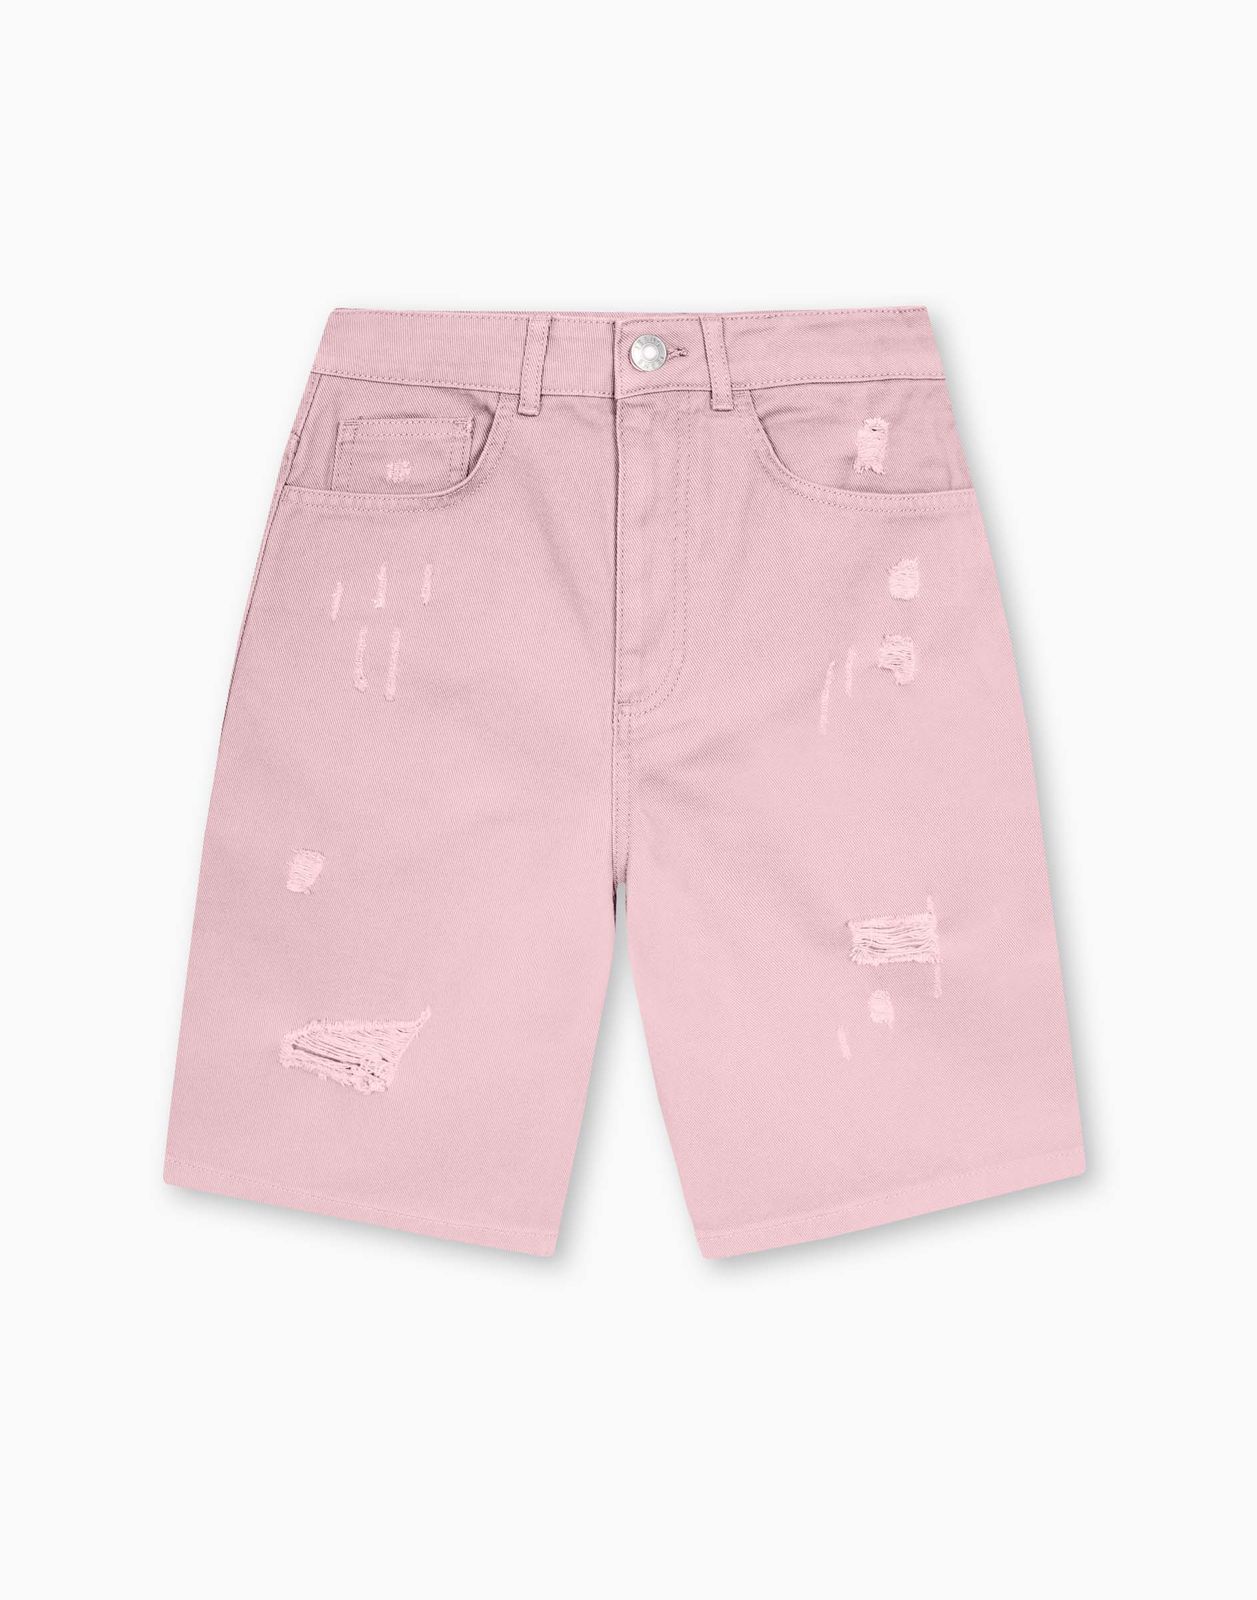 Шорты женские Gloria Jeans GSH009922 светло-розовый S/170